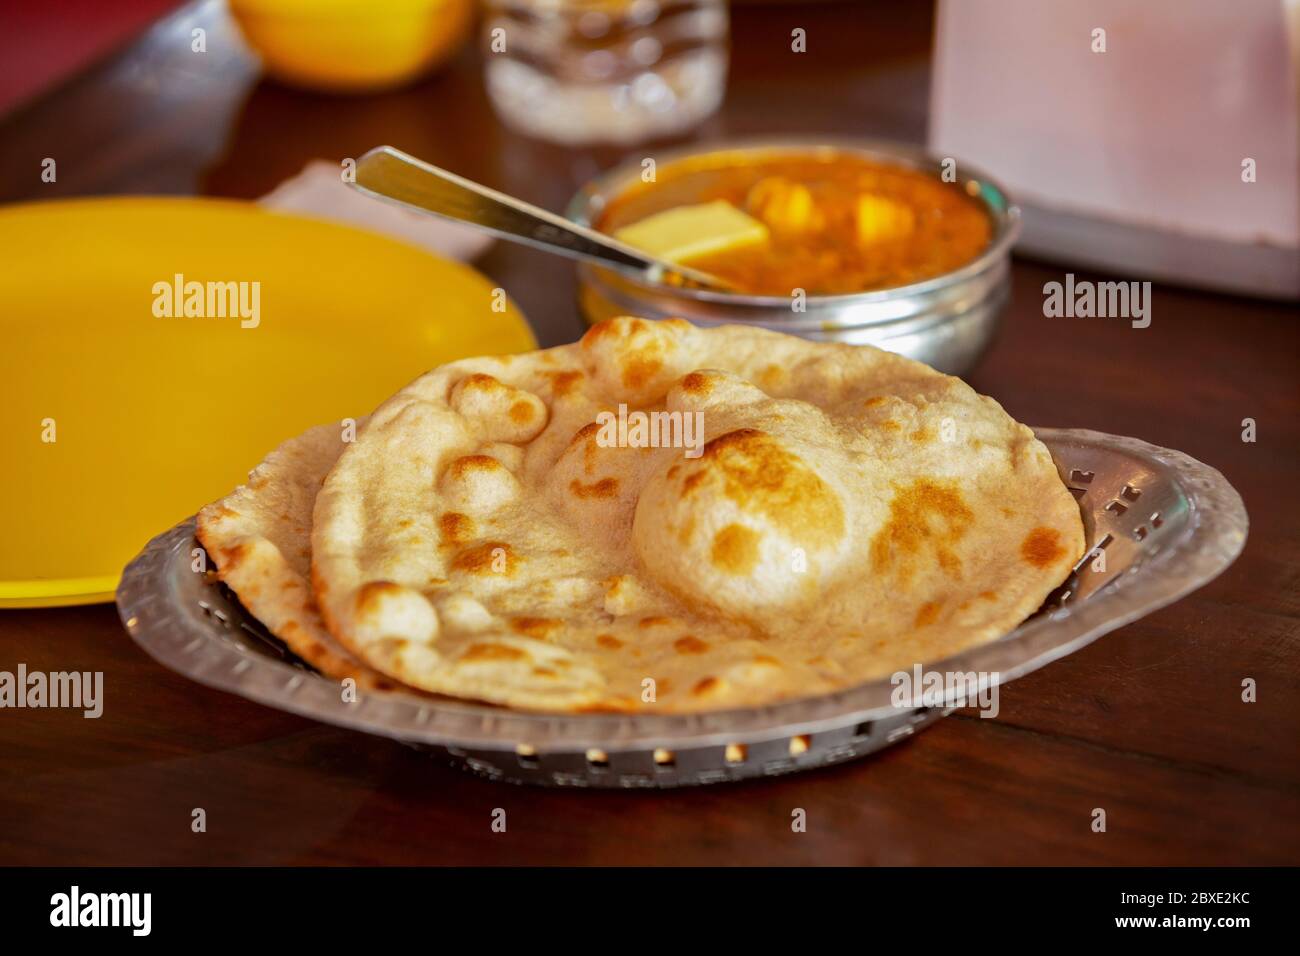 Cappati in stile indiano in un piatto sul tavolo con una ciotola di curry. Foto Stock